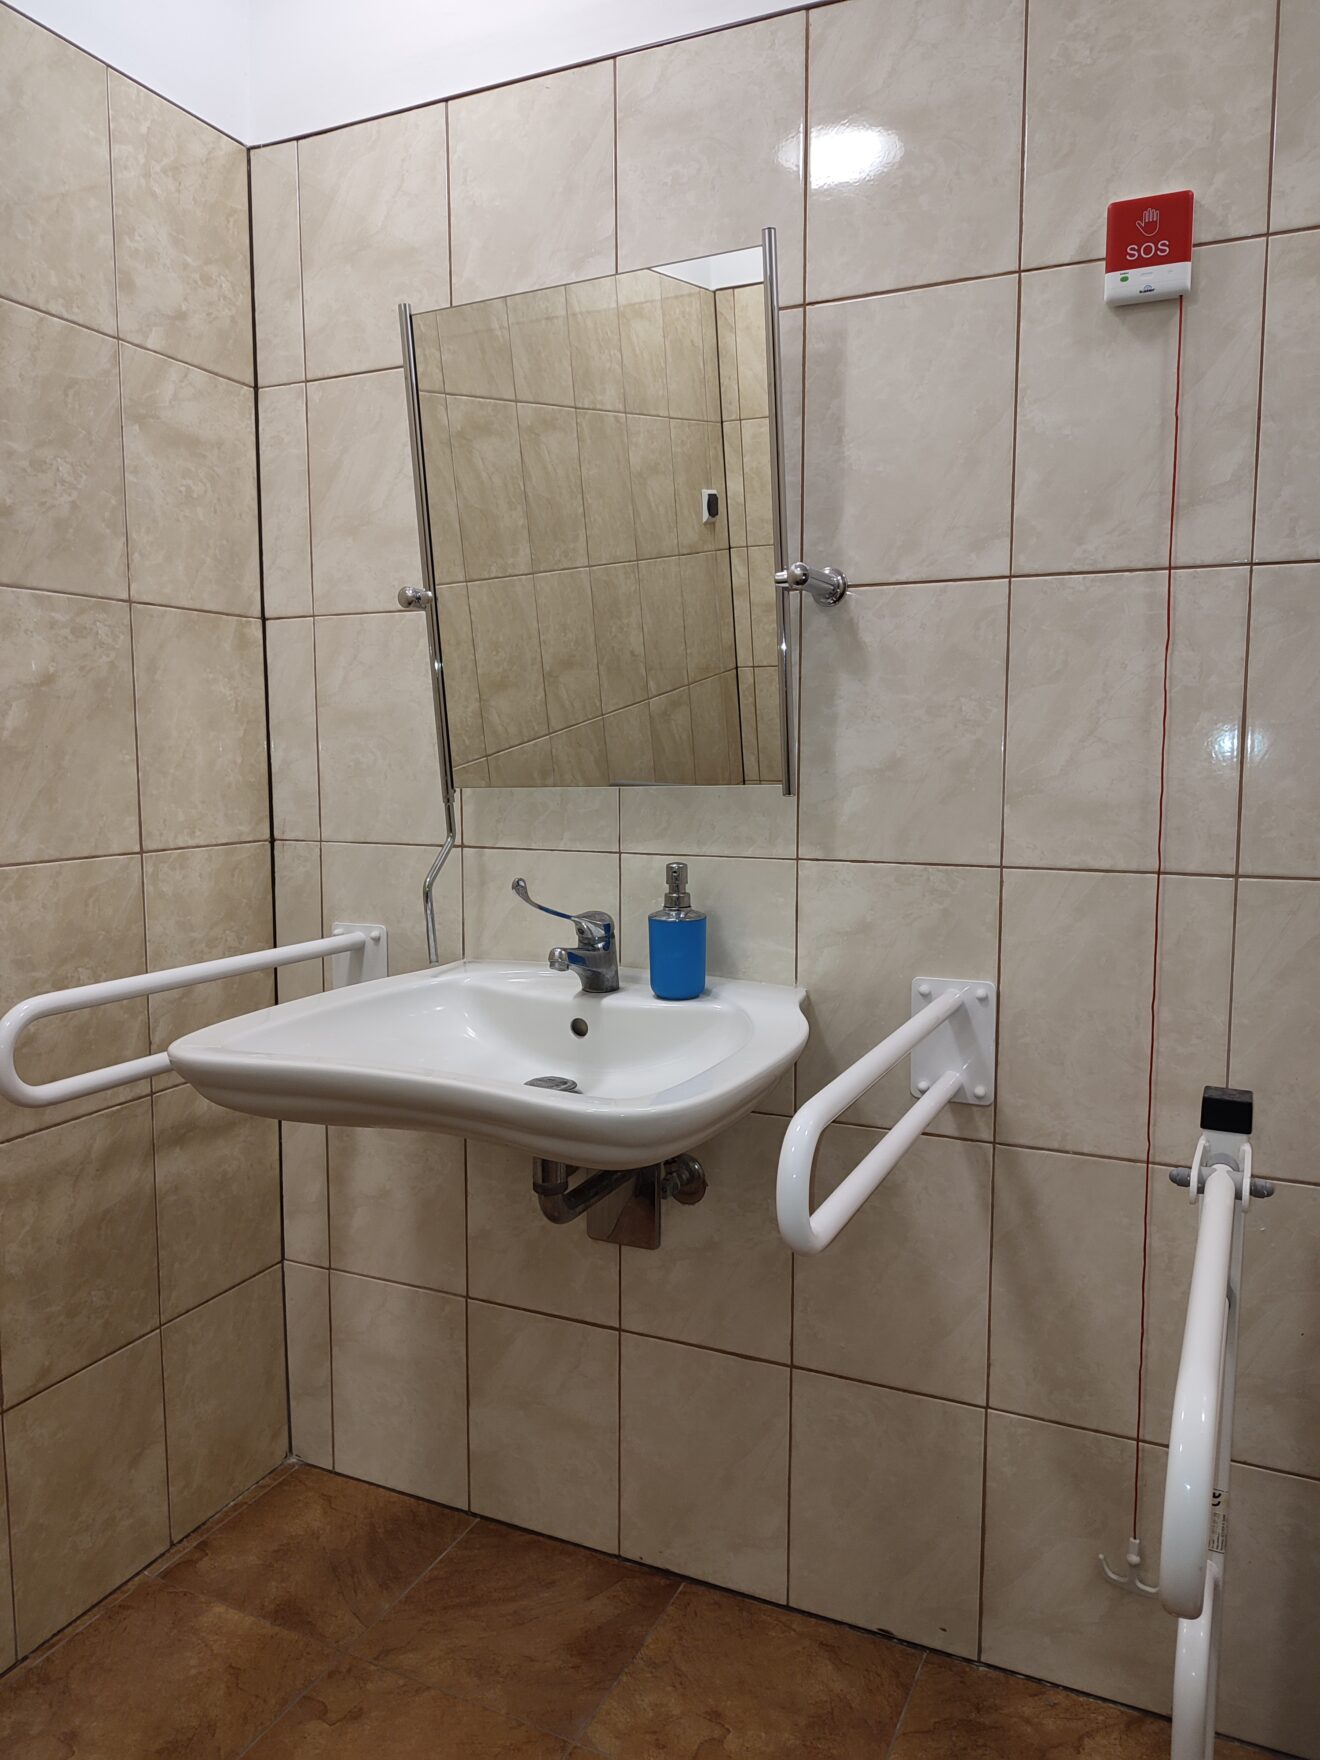 Pomieszczenie toalety. Na ścianie zawieszone lustro, umywalka z uchwytami i czerwony przycisk alarmowy